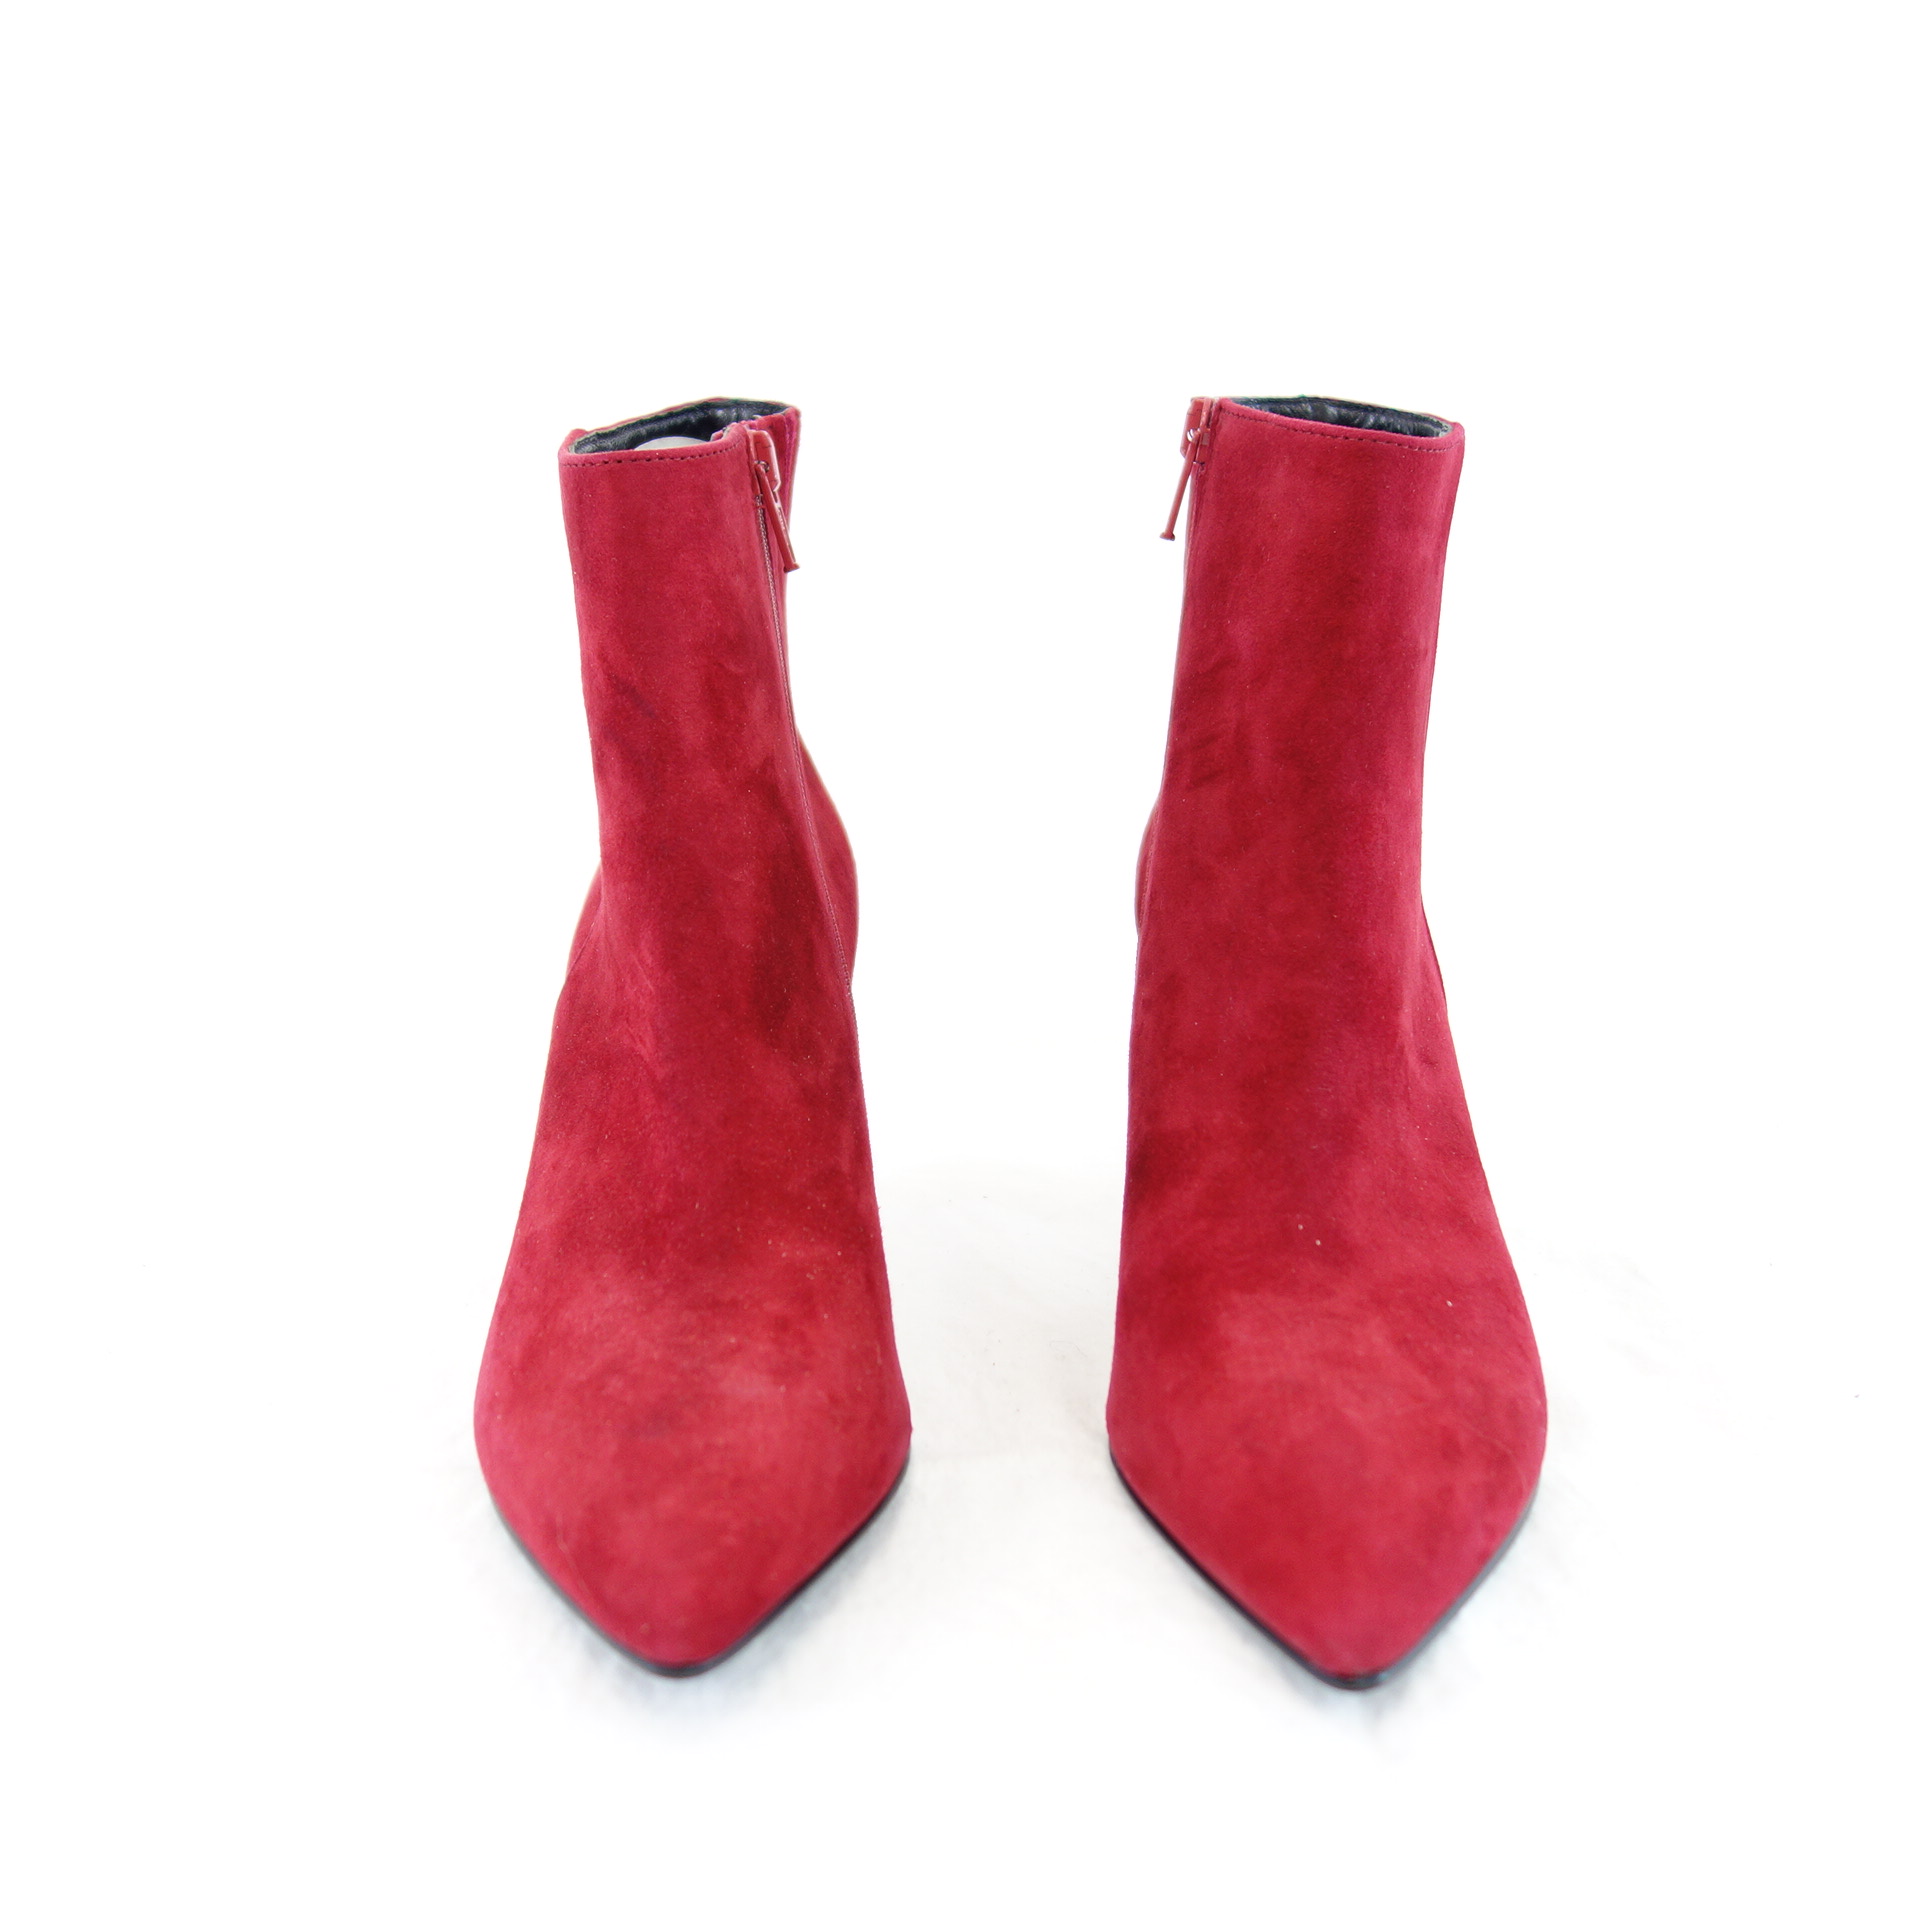 KENNEL & SCHMENGER Damen Schuhe Stiefeletten Boots Stiefel  Leder Rot Spitz 36 Np 220 Neu